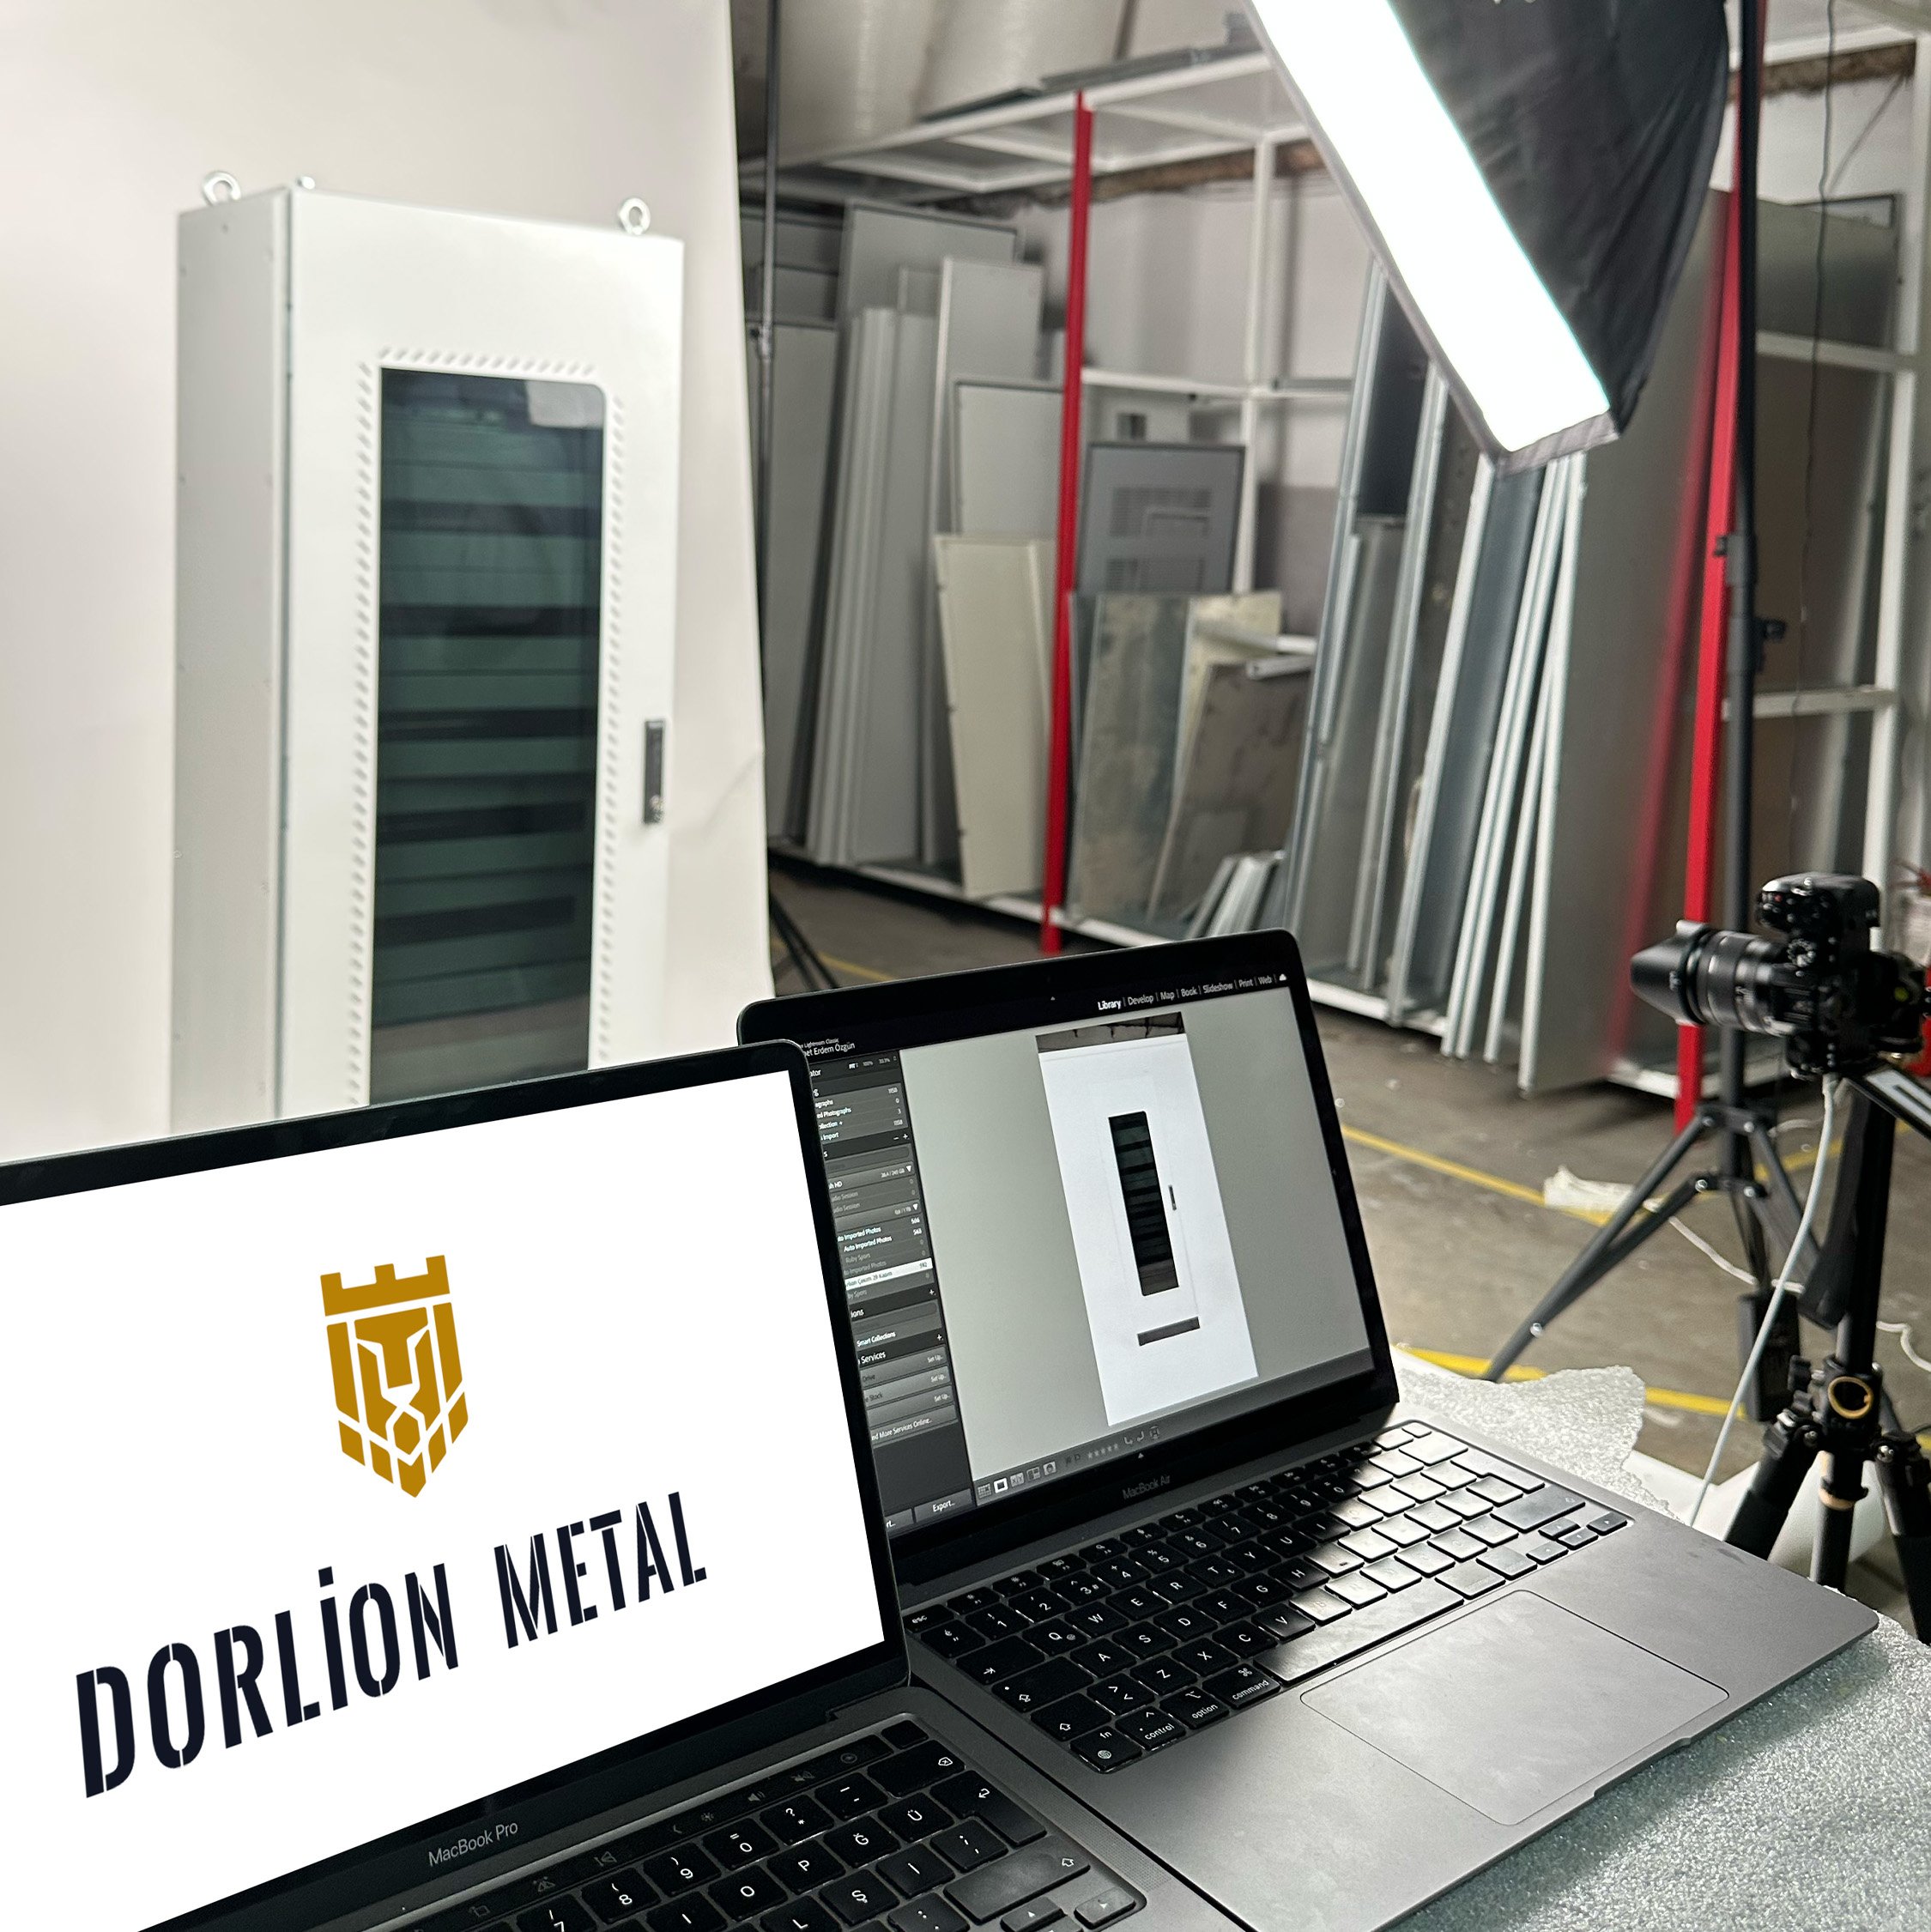 Dorlion Metal